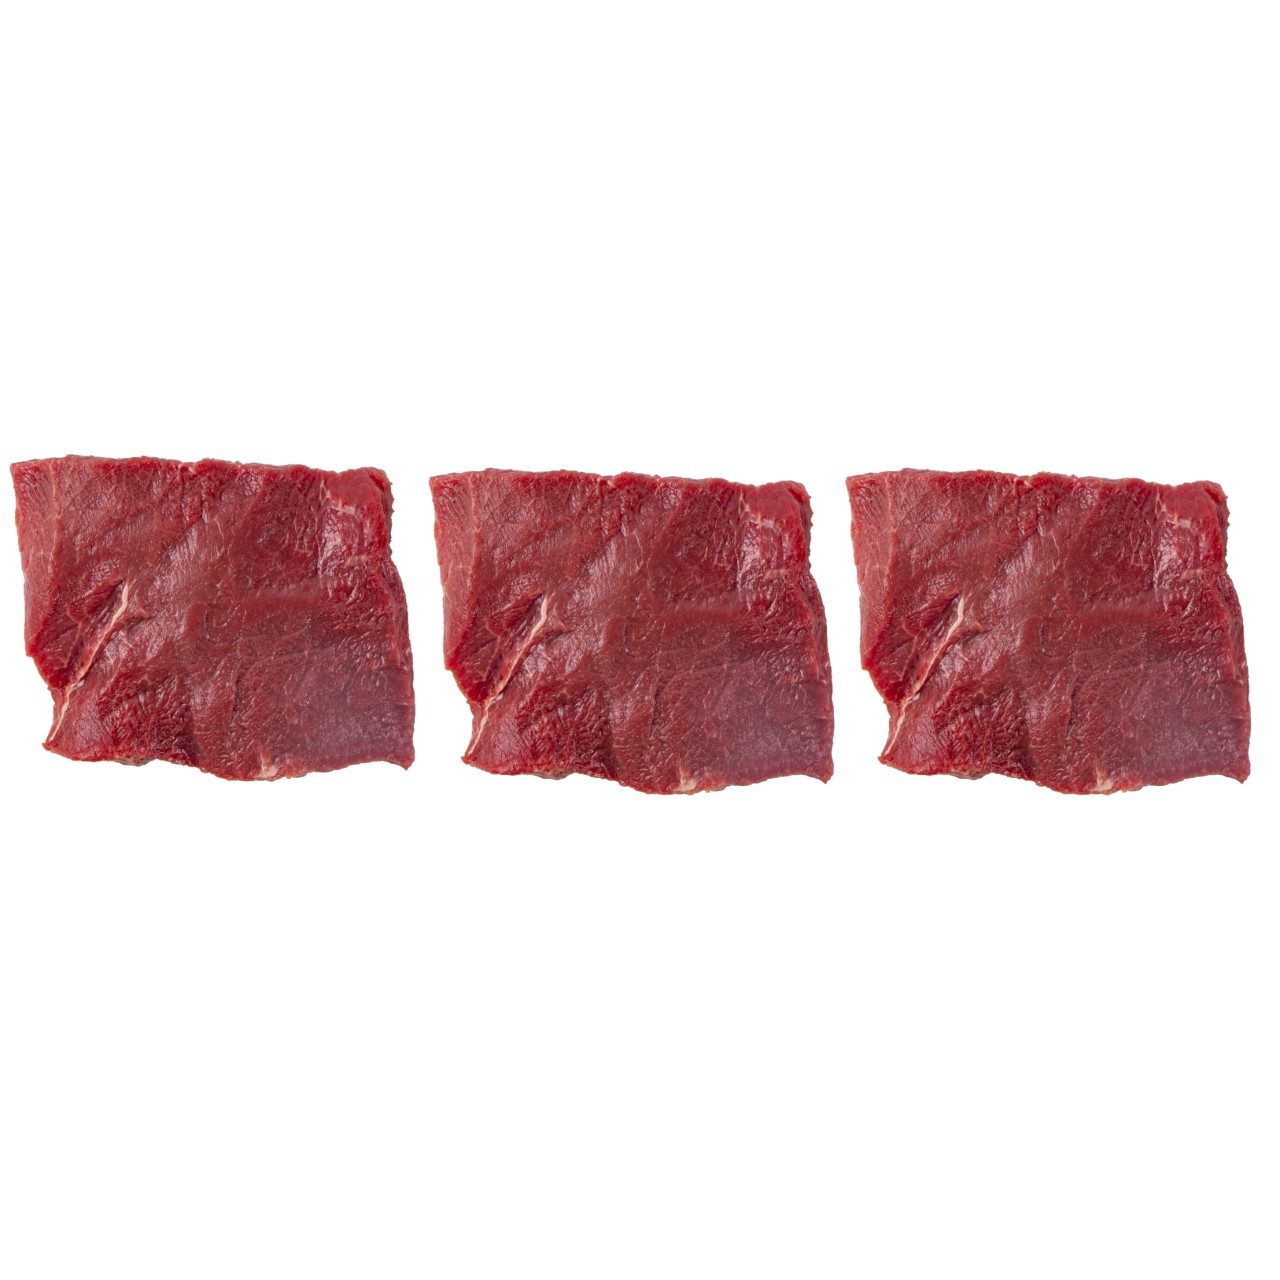 Runder flat iron steak Ierland